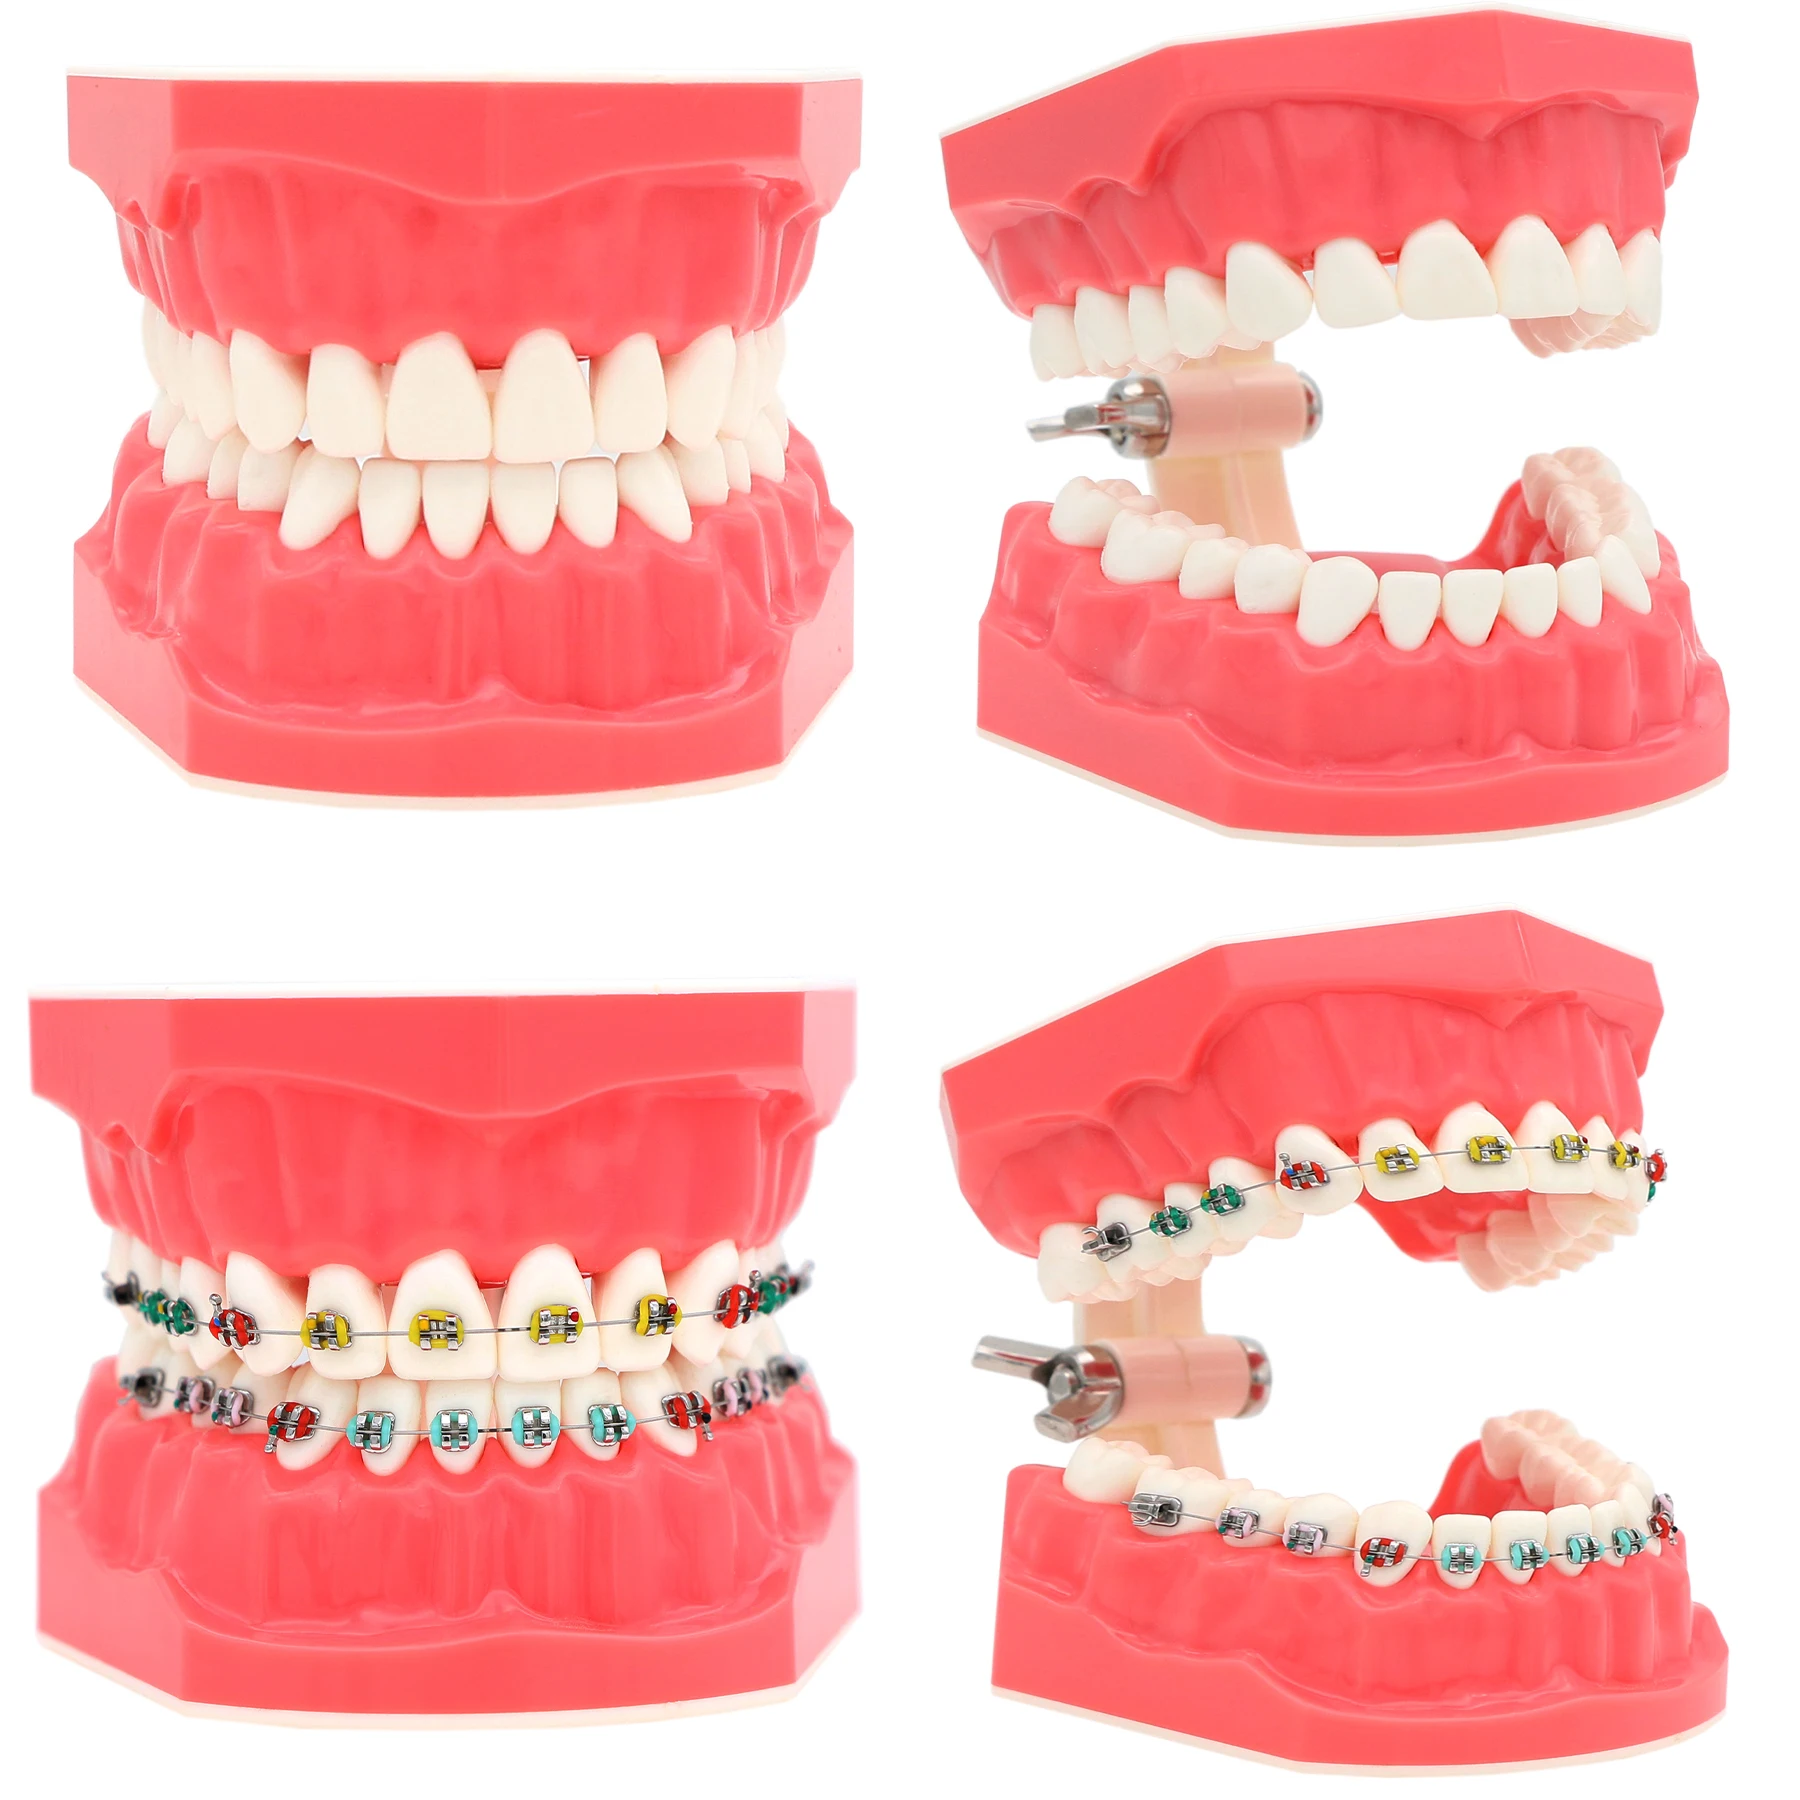 

Dental 1:1 Teeth Model Dentistry Brushing Flossing Practice Studying Teaching Model FalseTeeth M7010-1 Dentures M7010-2